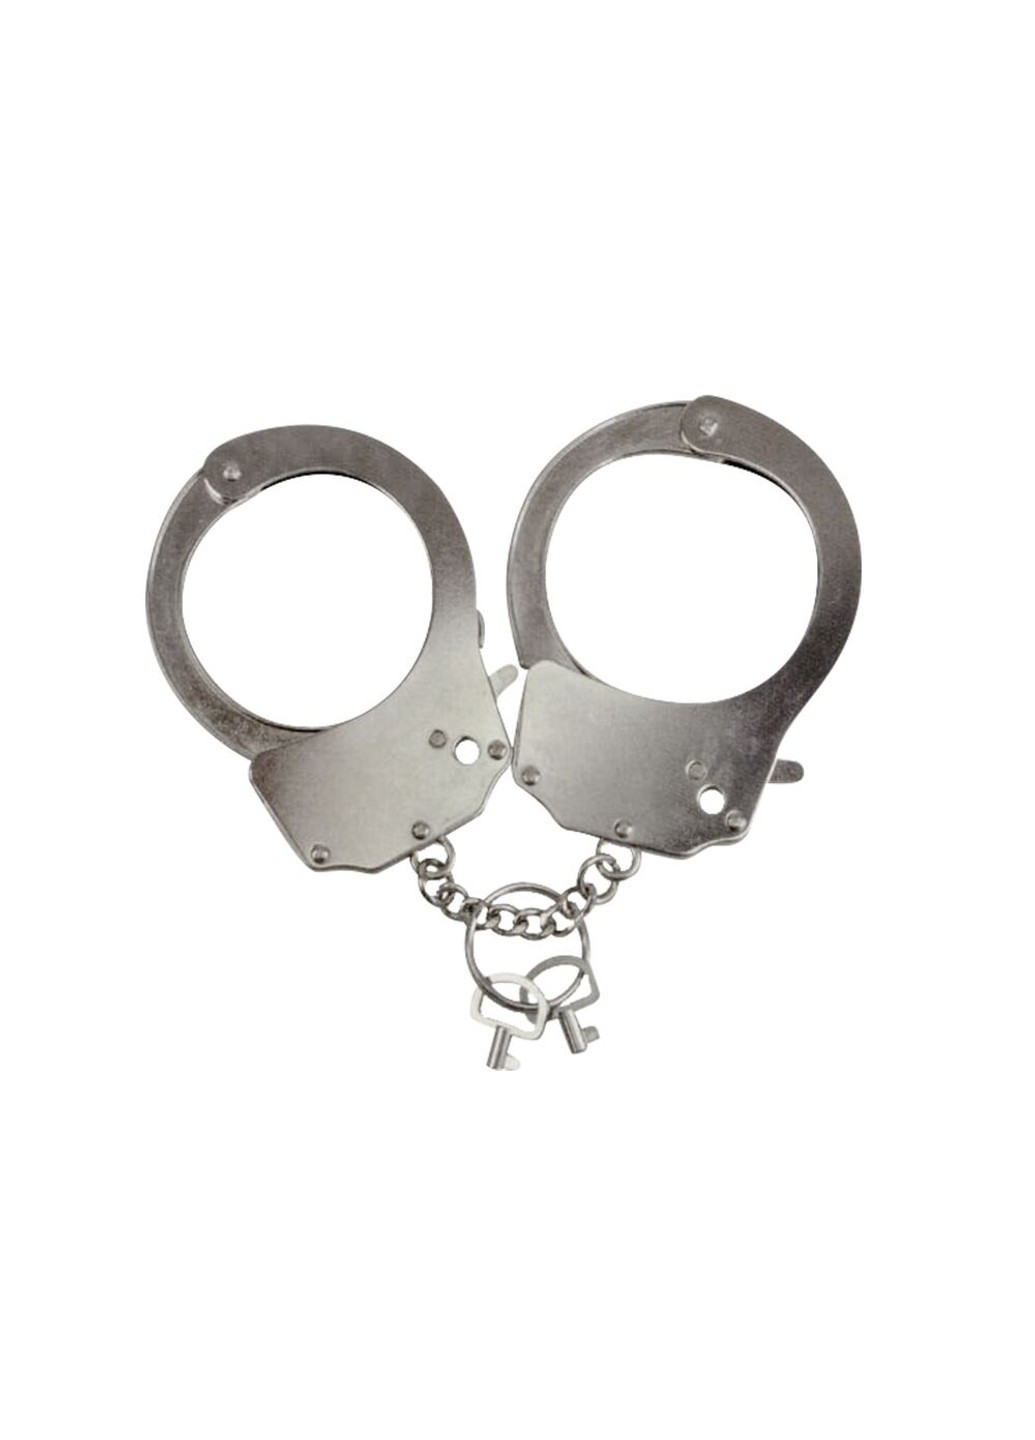 Наручники металеві Handcuffs Metallic (поліцейські) Adrien Lastic (255289801)